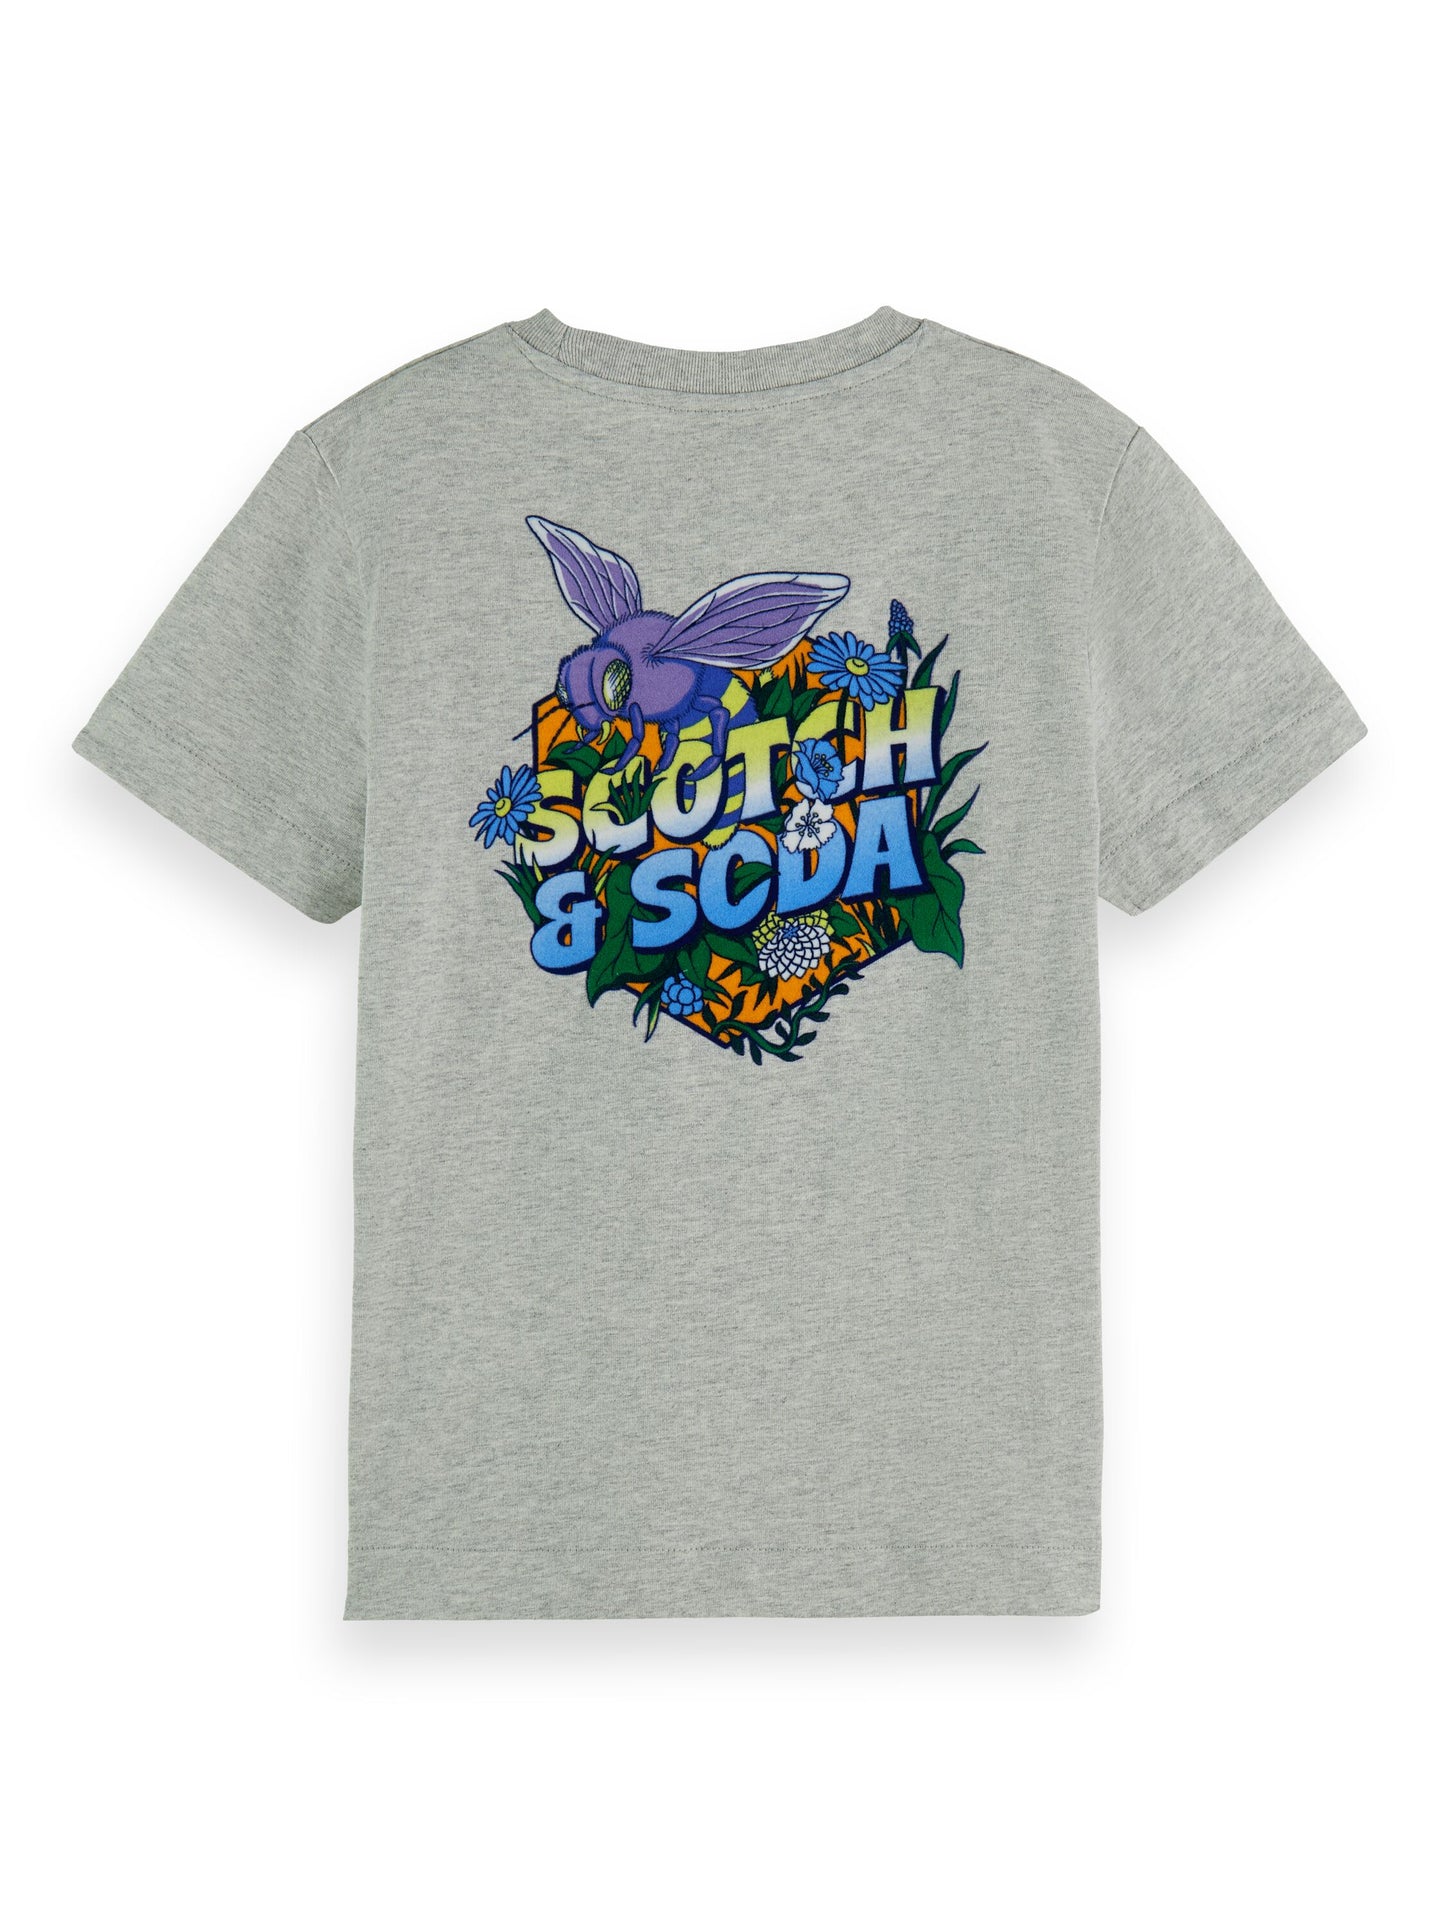 Scotch & Soda Boys T-Shirt_Grey 170558-0606